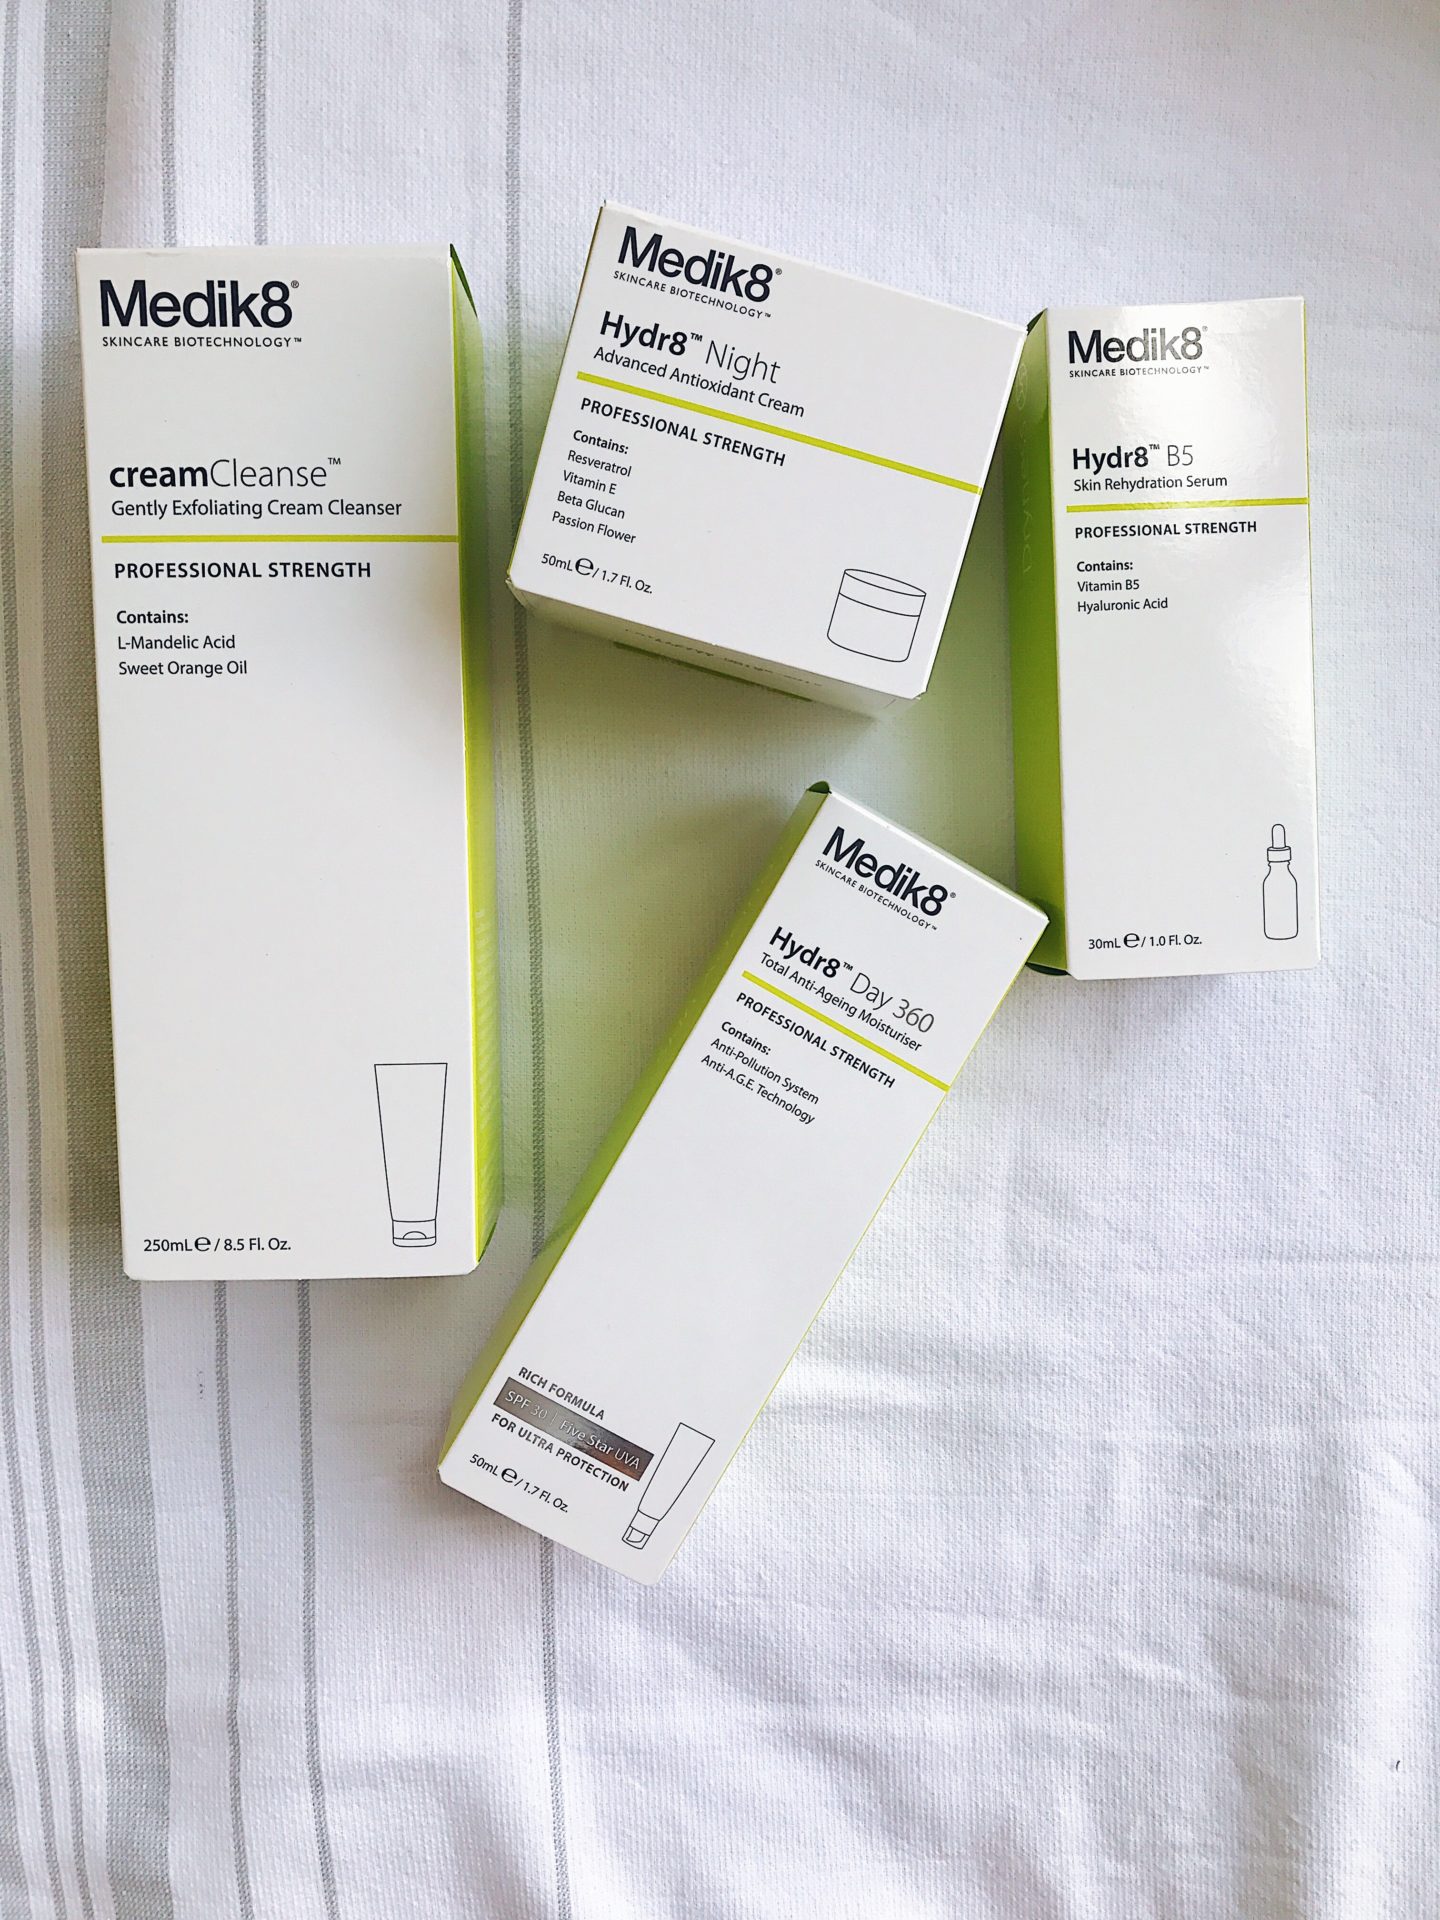 Medik8 Skin Care Routine